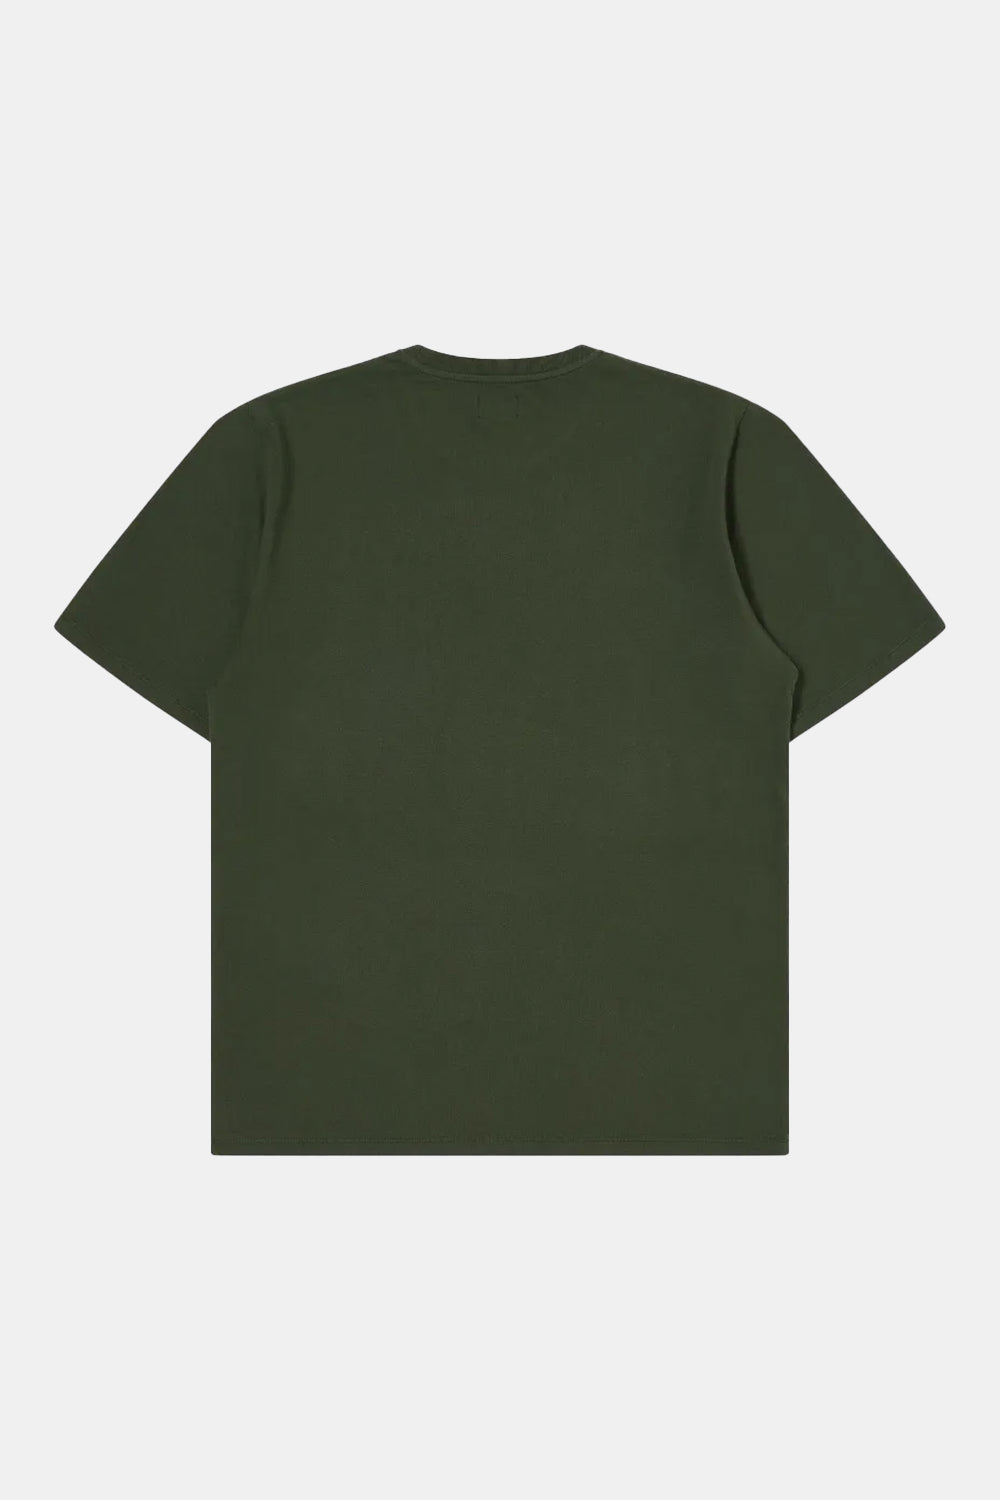 Edwin Sunny Day T-Shirt (Kombu Green)